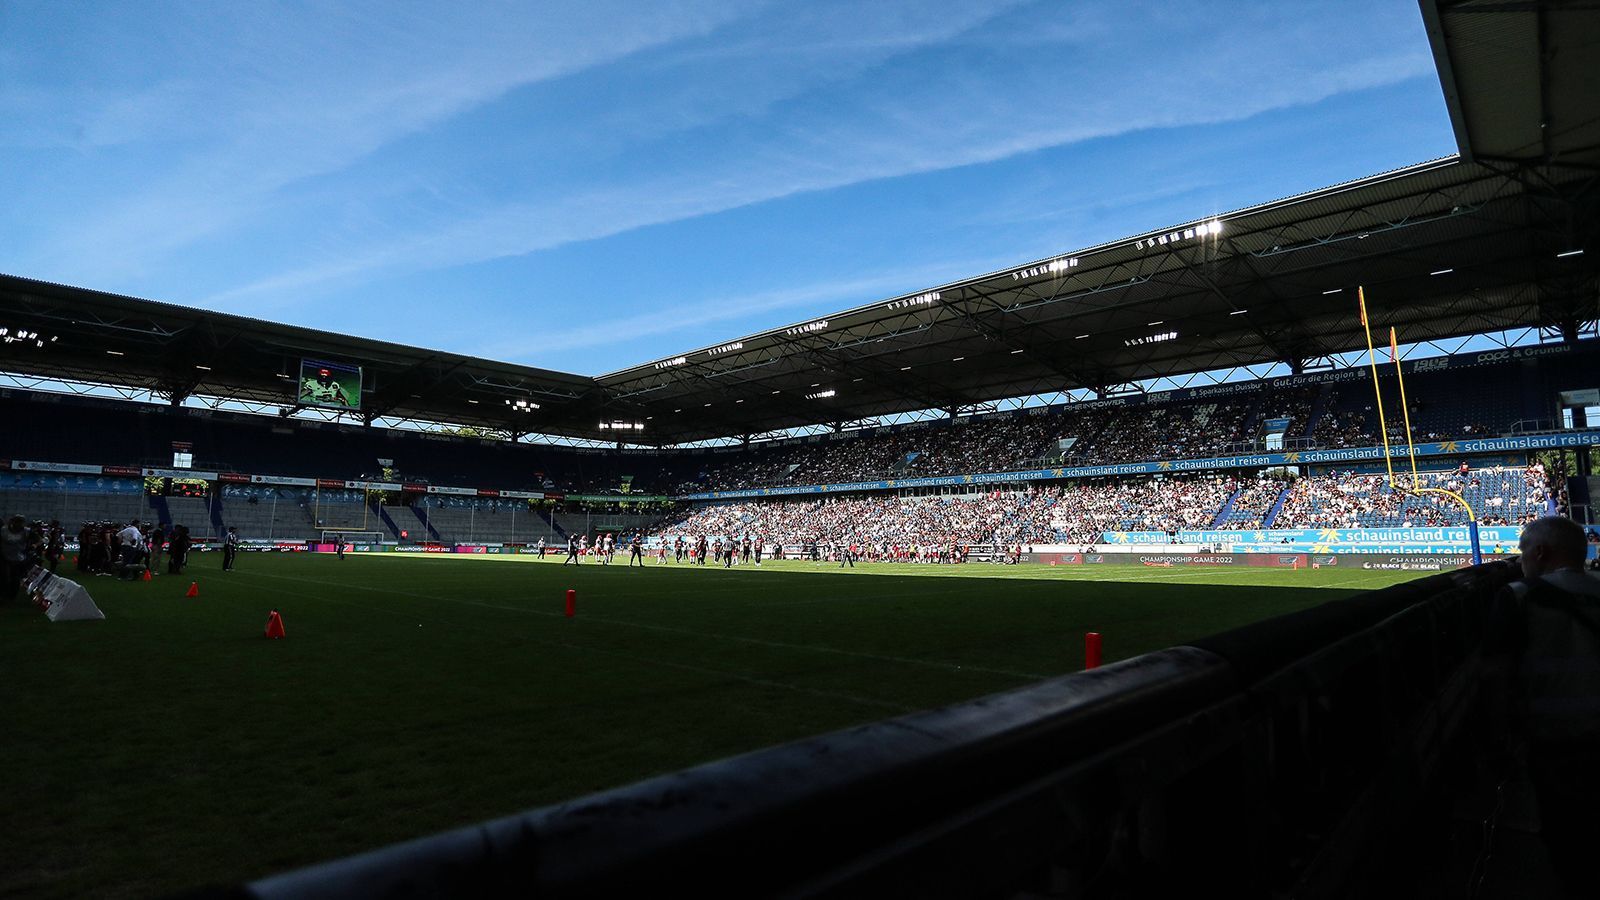 
                <strong>Rhein Fire Düsseldorf</strong><br>
                Das Finale der ELF in dieser Saison wird dort ausgetragen, wo auch Rhein Fire Düsseldorf seine Heimspiele austrägt: In der Schauinsland-Reisen-Arena in Duisburg. Rhein Fire will natürlich gerne an einem Finale im eigenen Stadion teilnehmen. Die Spiele der Düsseldorfer sind attraktiv und ziehen viele Zuschauer in die Arena in Duisburg, zudem ist die Miete billiger als in Kölner Spielstätten. Über 31.000 Zuschauer gehen in die Arena hinein, es ist damit das größte Stadion in der ELF.
              